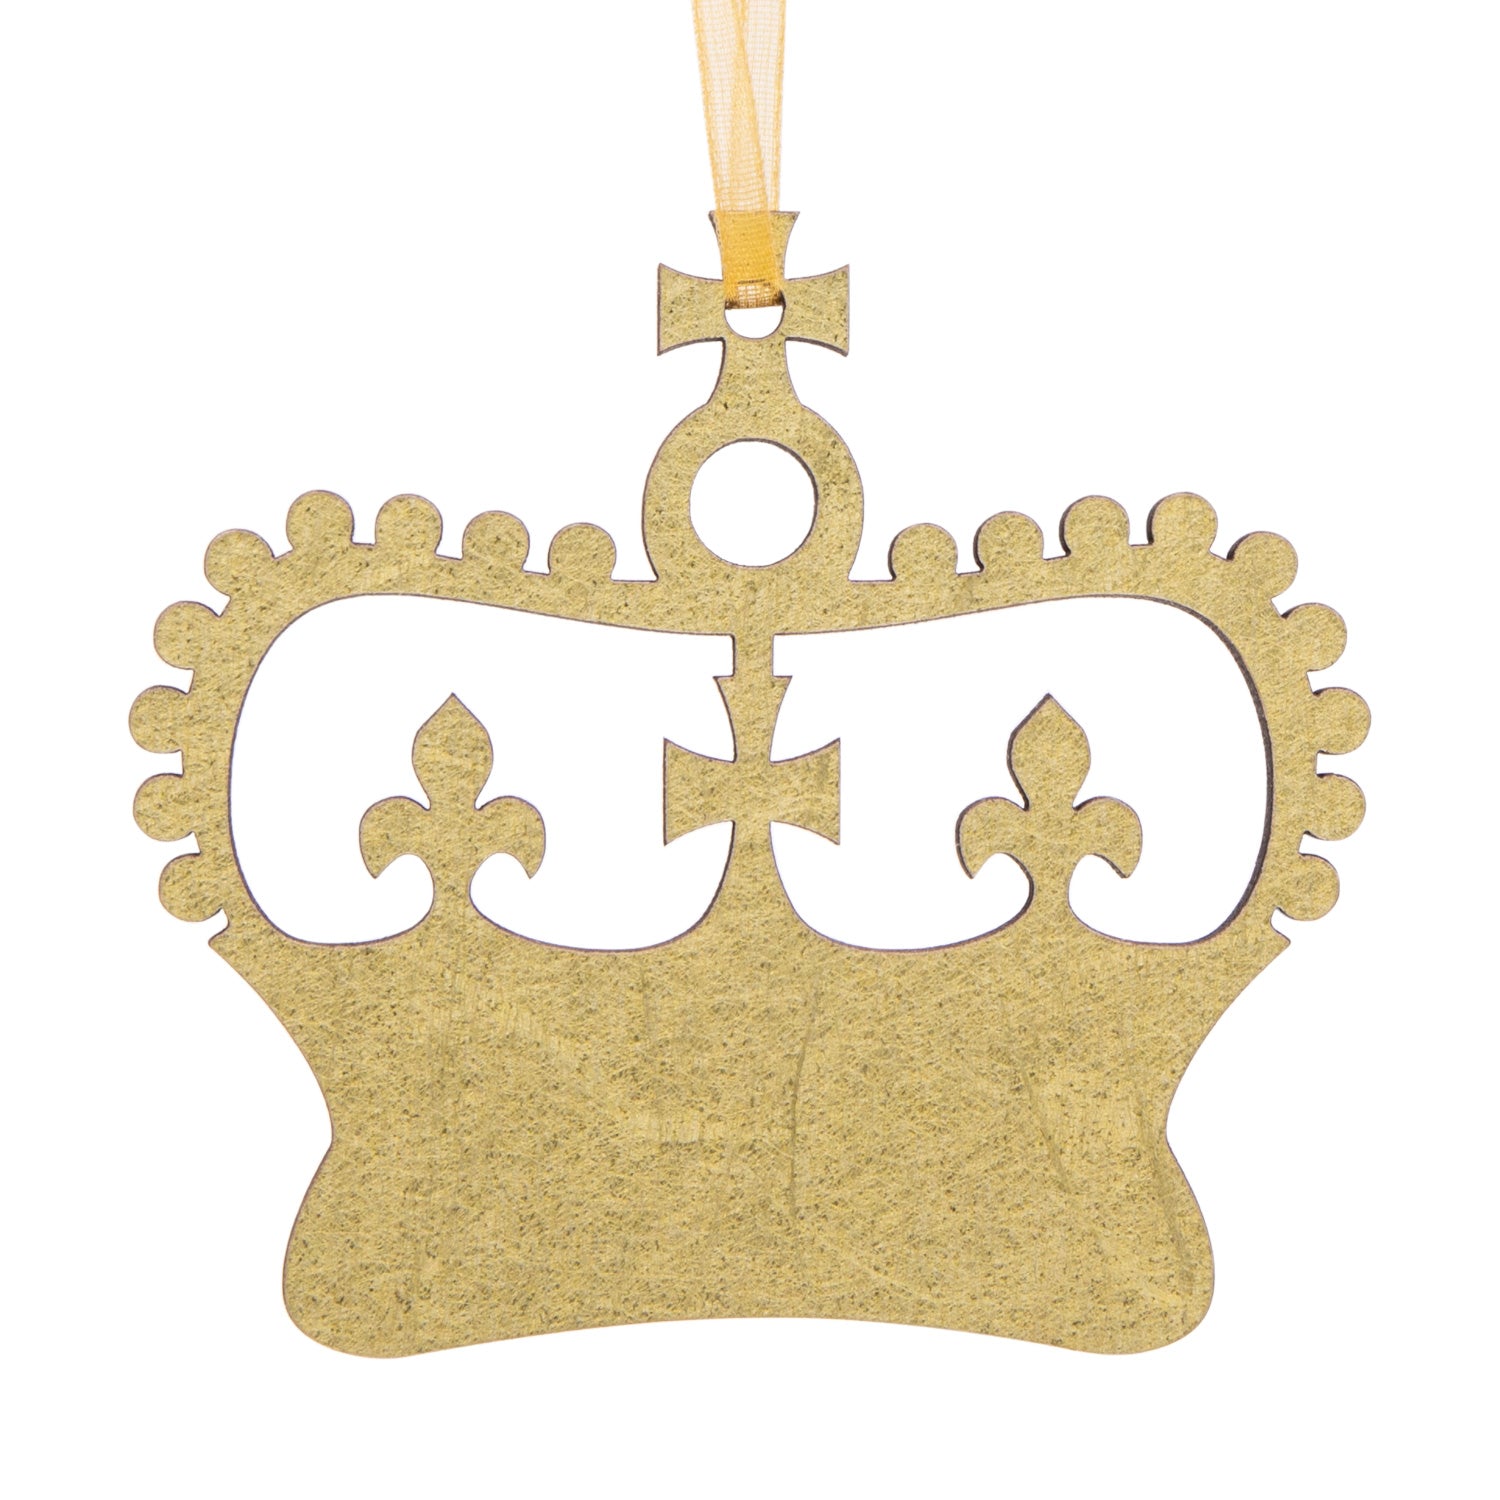 Artcuts Queen Elizabeth II Crown Hanging Wooden Decoration